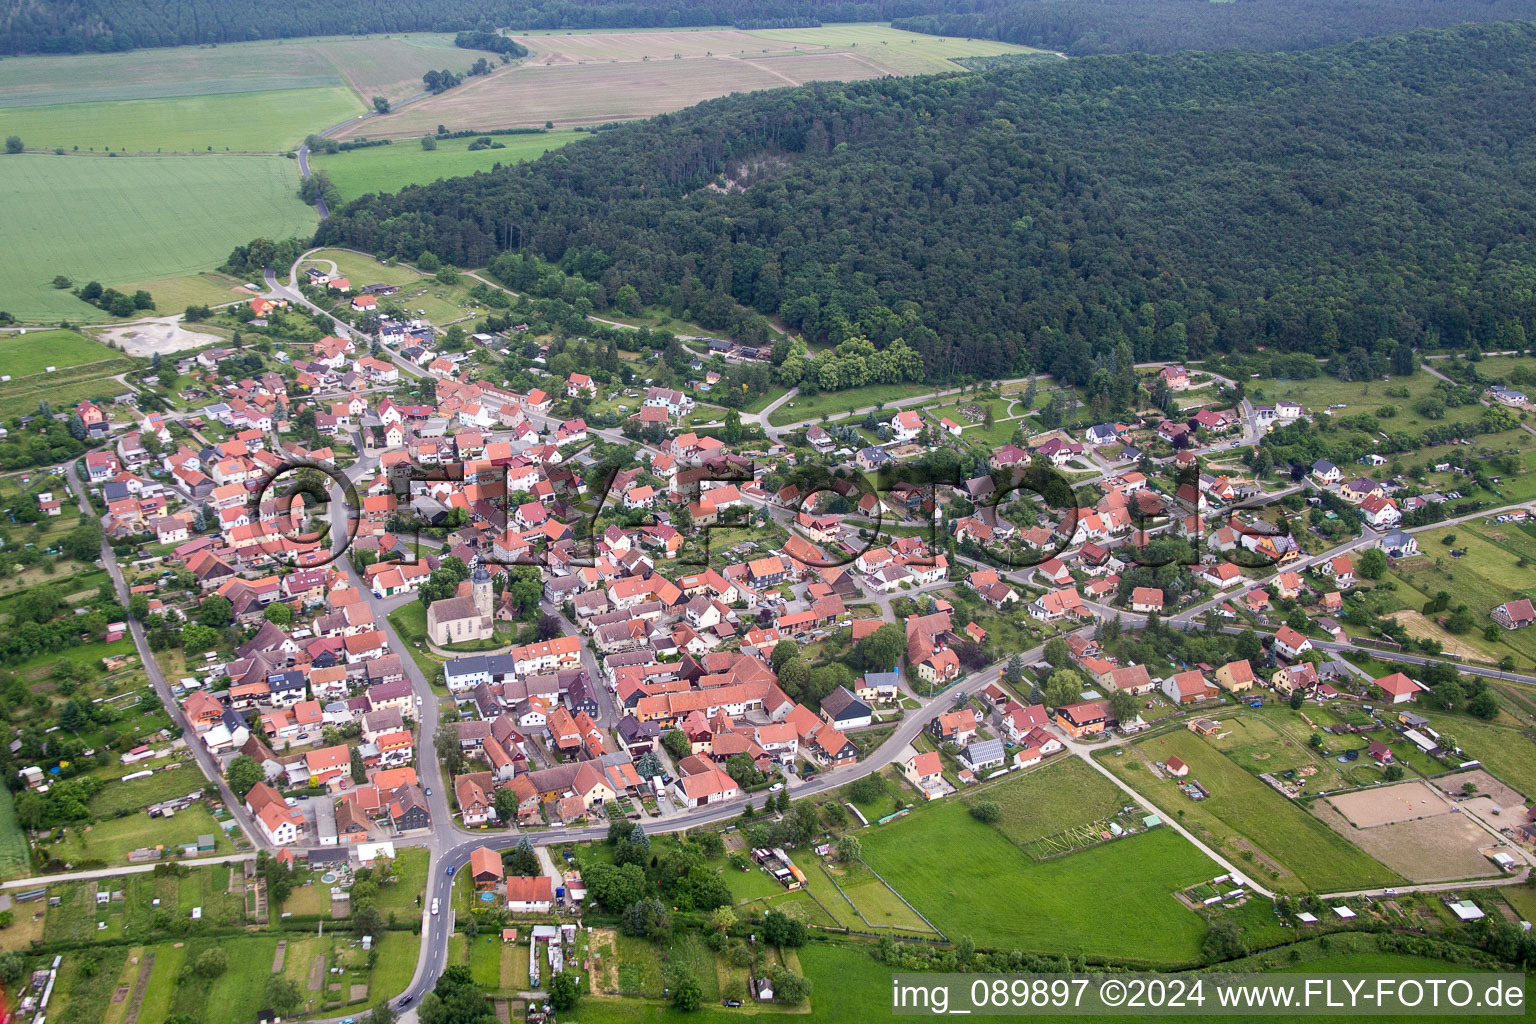 Vue aérienne de Quartier Queienfeld à Grabfeld à Queienfeld dans le département Thuringe, Allemagne